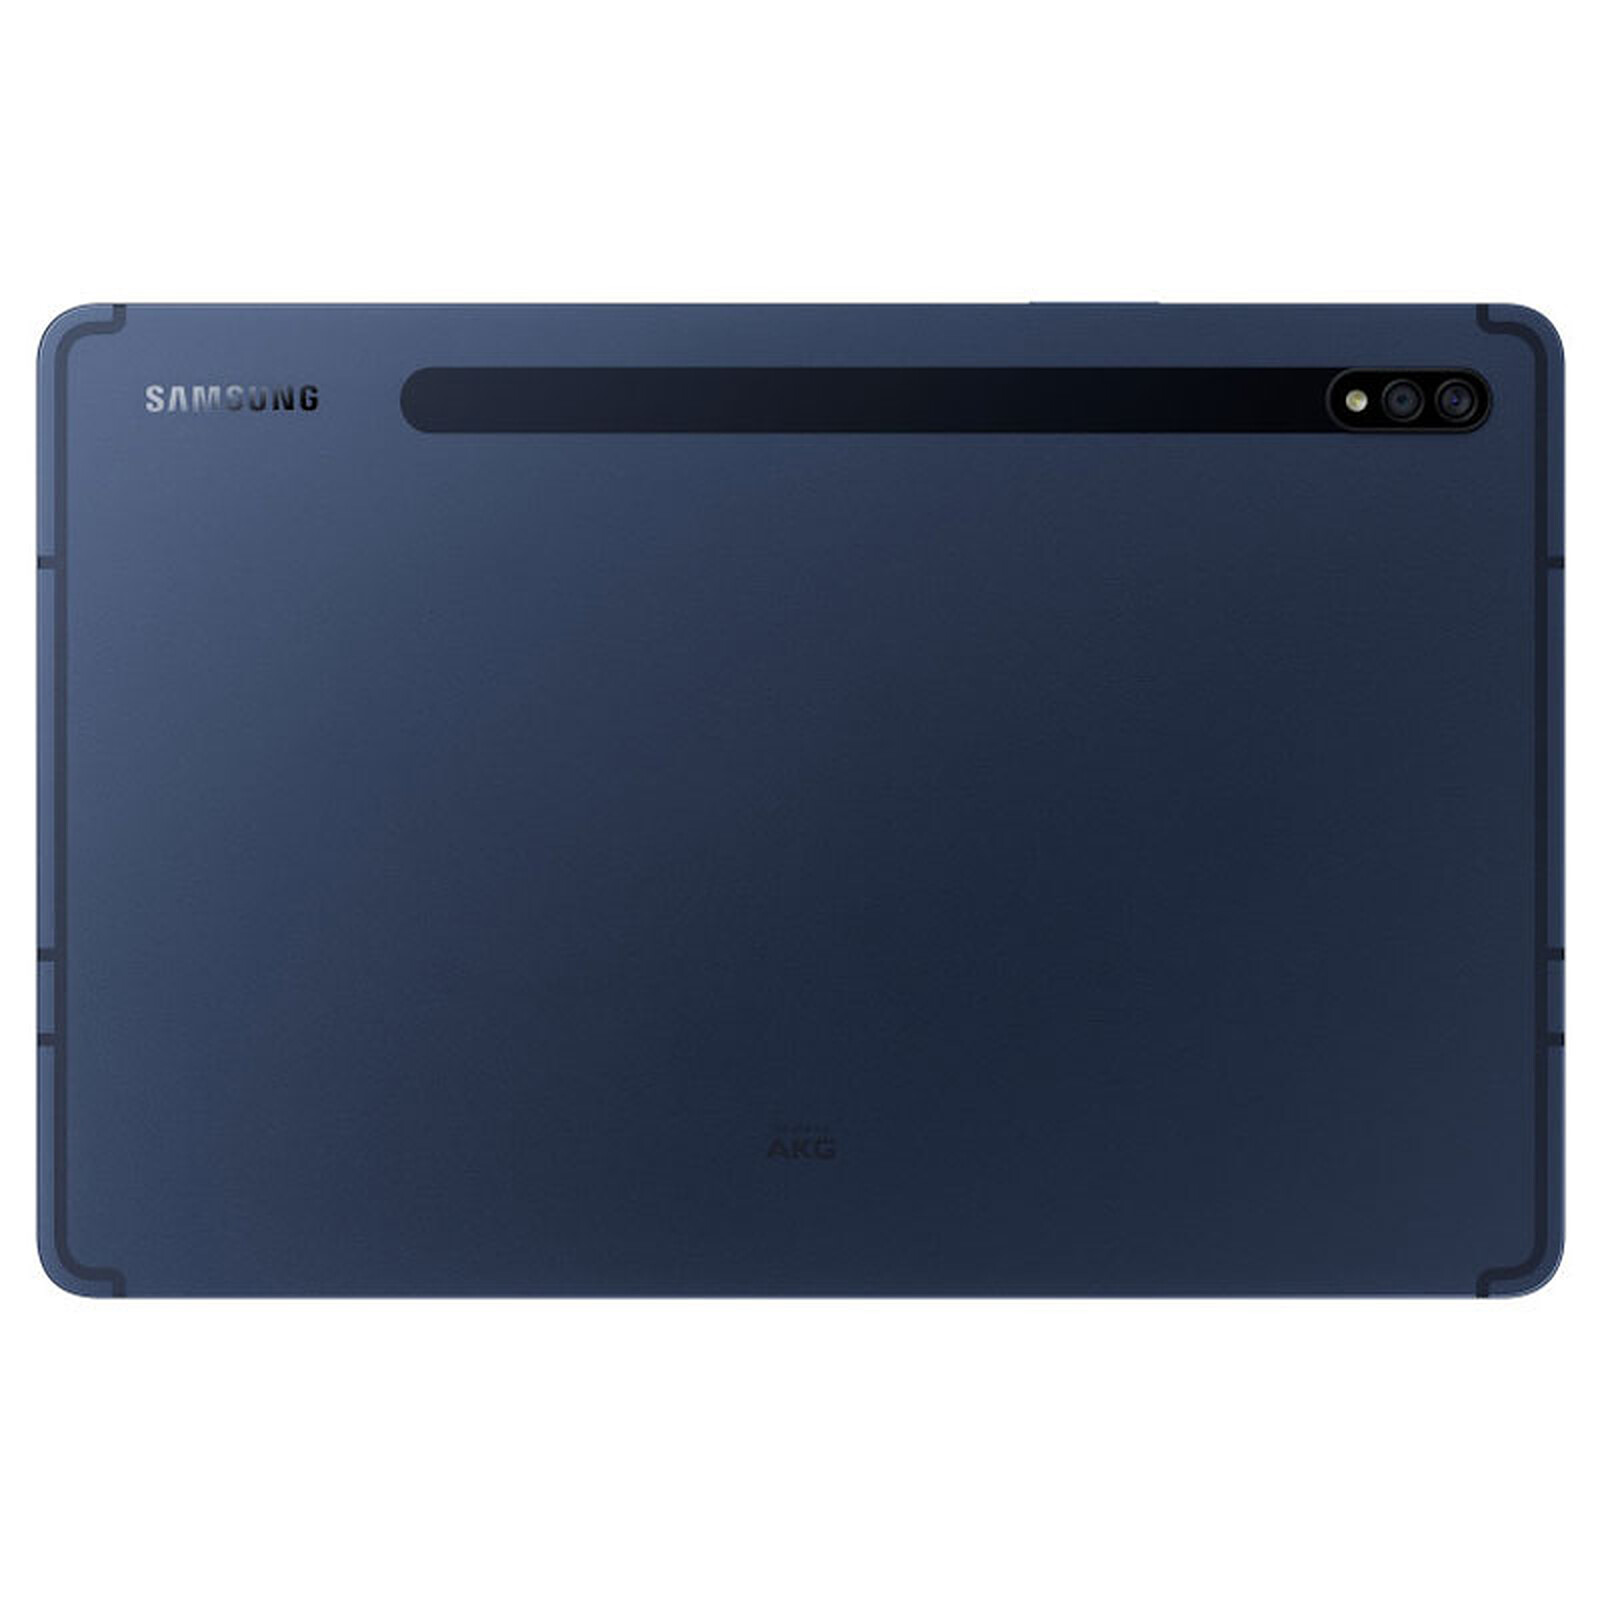 Samsung Galaxy Tab S7 SM-T870 (Noir) - WiFi - 128 Go - 6 Go · Reconditionné  - Tablette reconditionnée Samsung sur